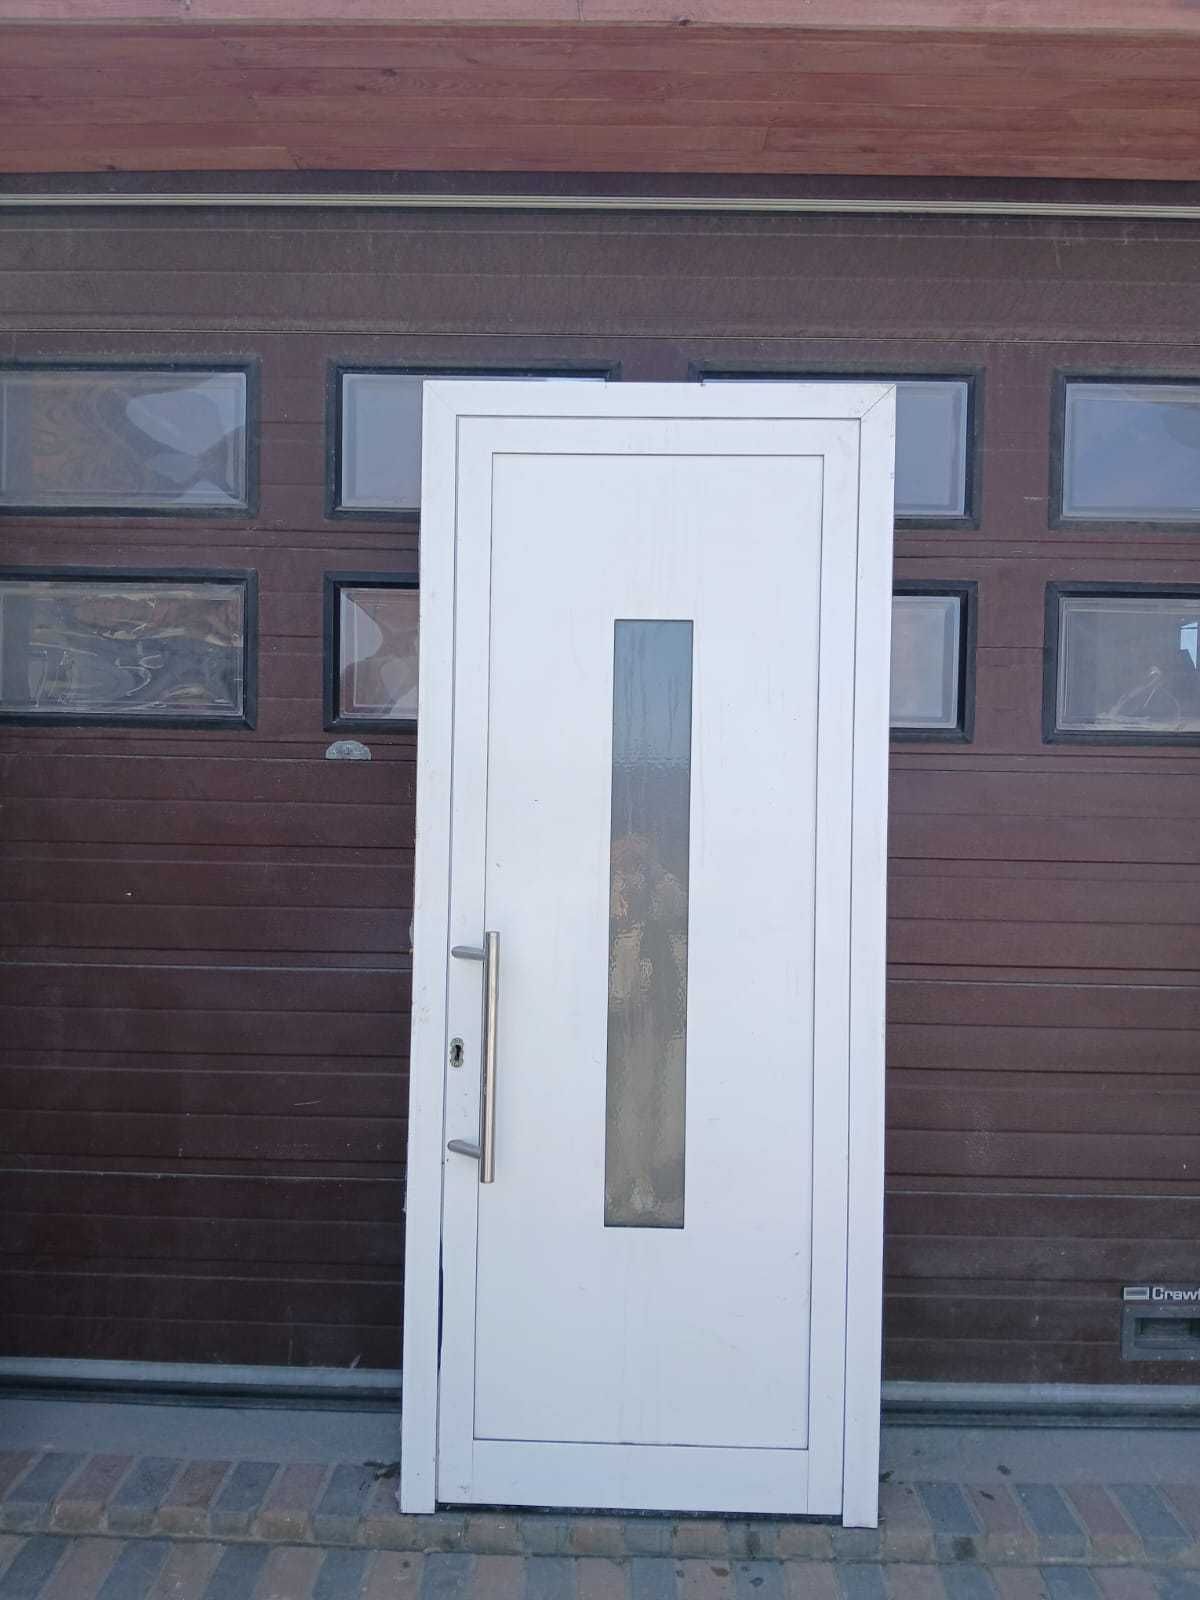 Drzwi zewnętrzne aluminiowe z szybą ornamentową 98x235 DOWÓZ CAŁY KRAJ